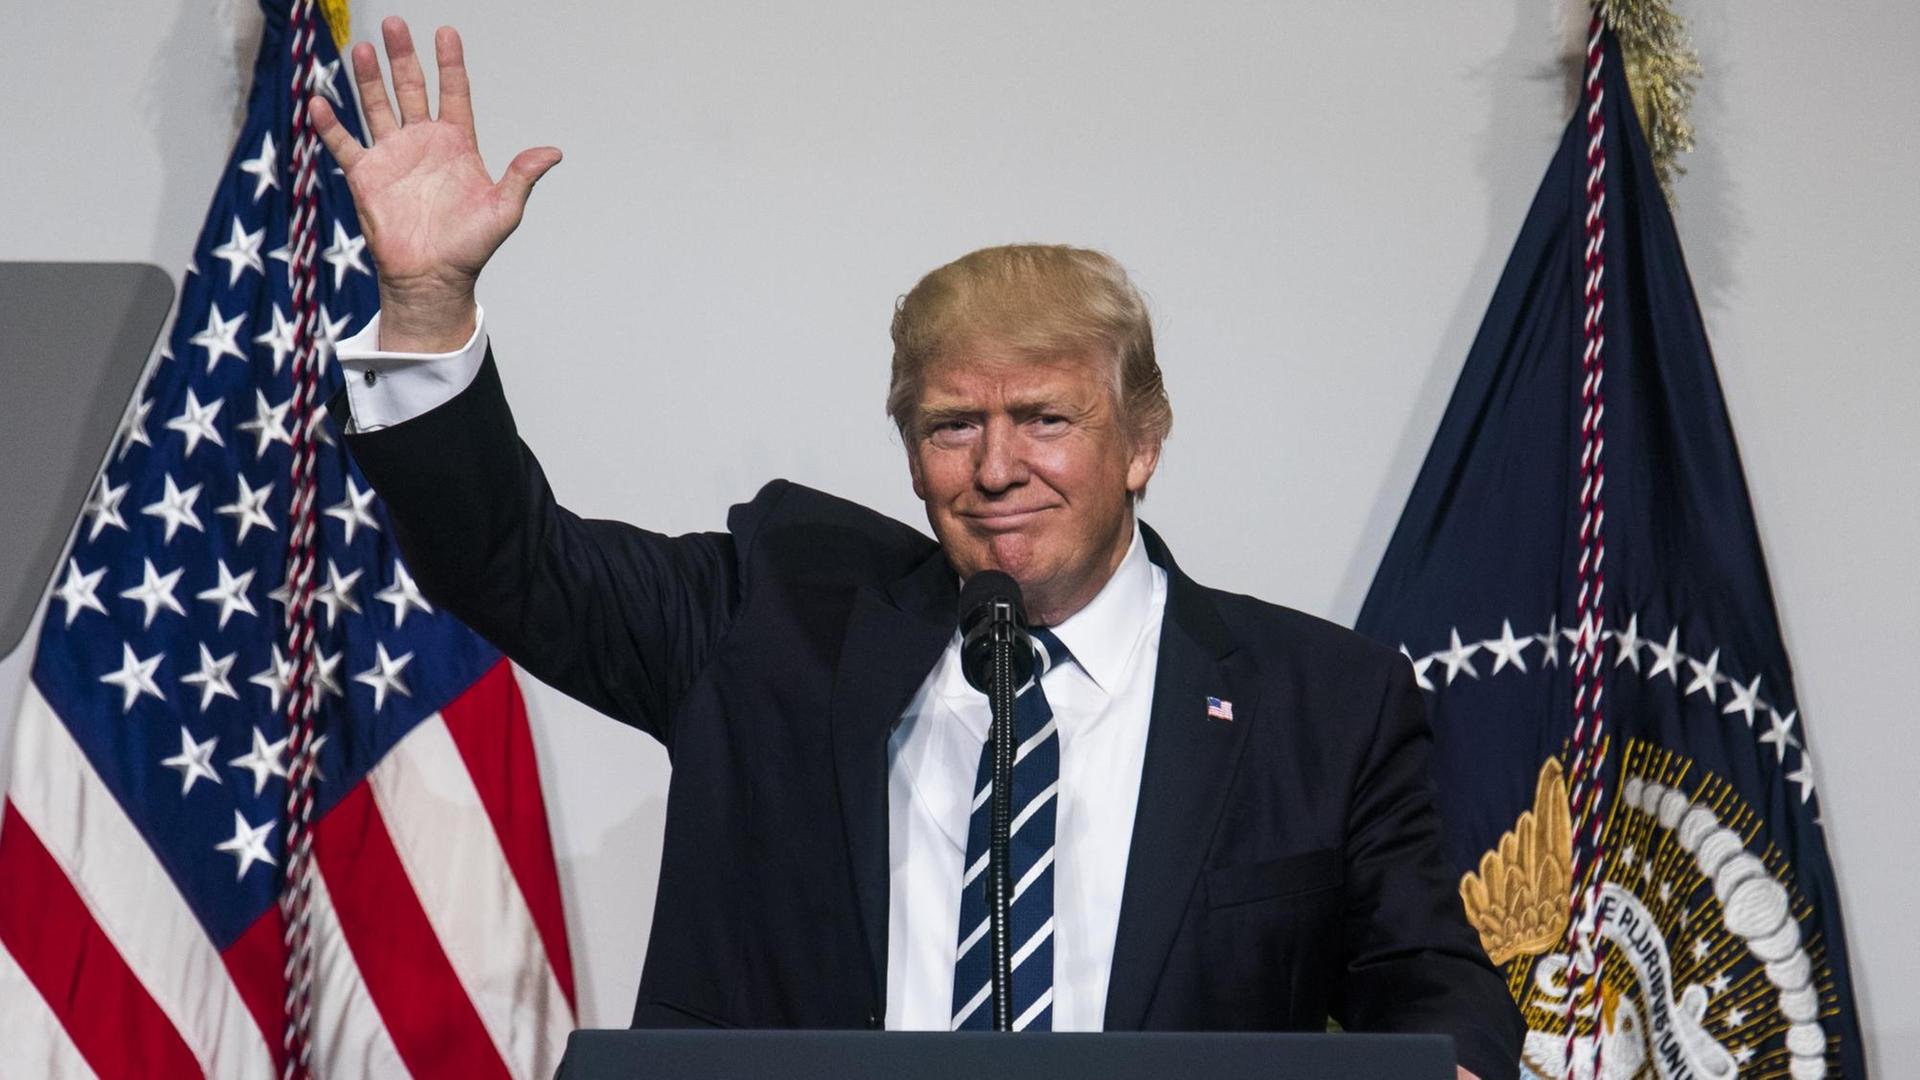 US-Präsident Donald Trump hebt seine rechte Hand zum Gruß, während er hinter einem Rednerpult und vor einer amerikanischen Flagge steht